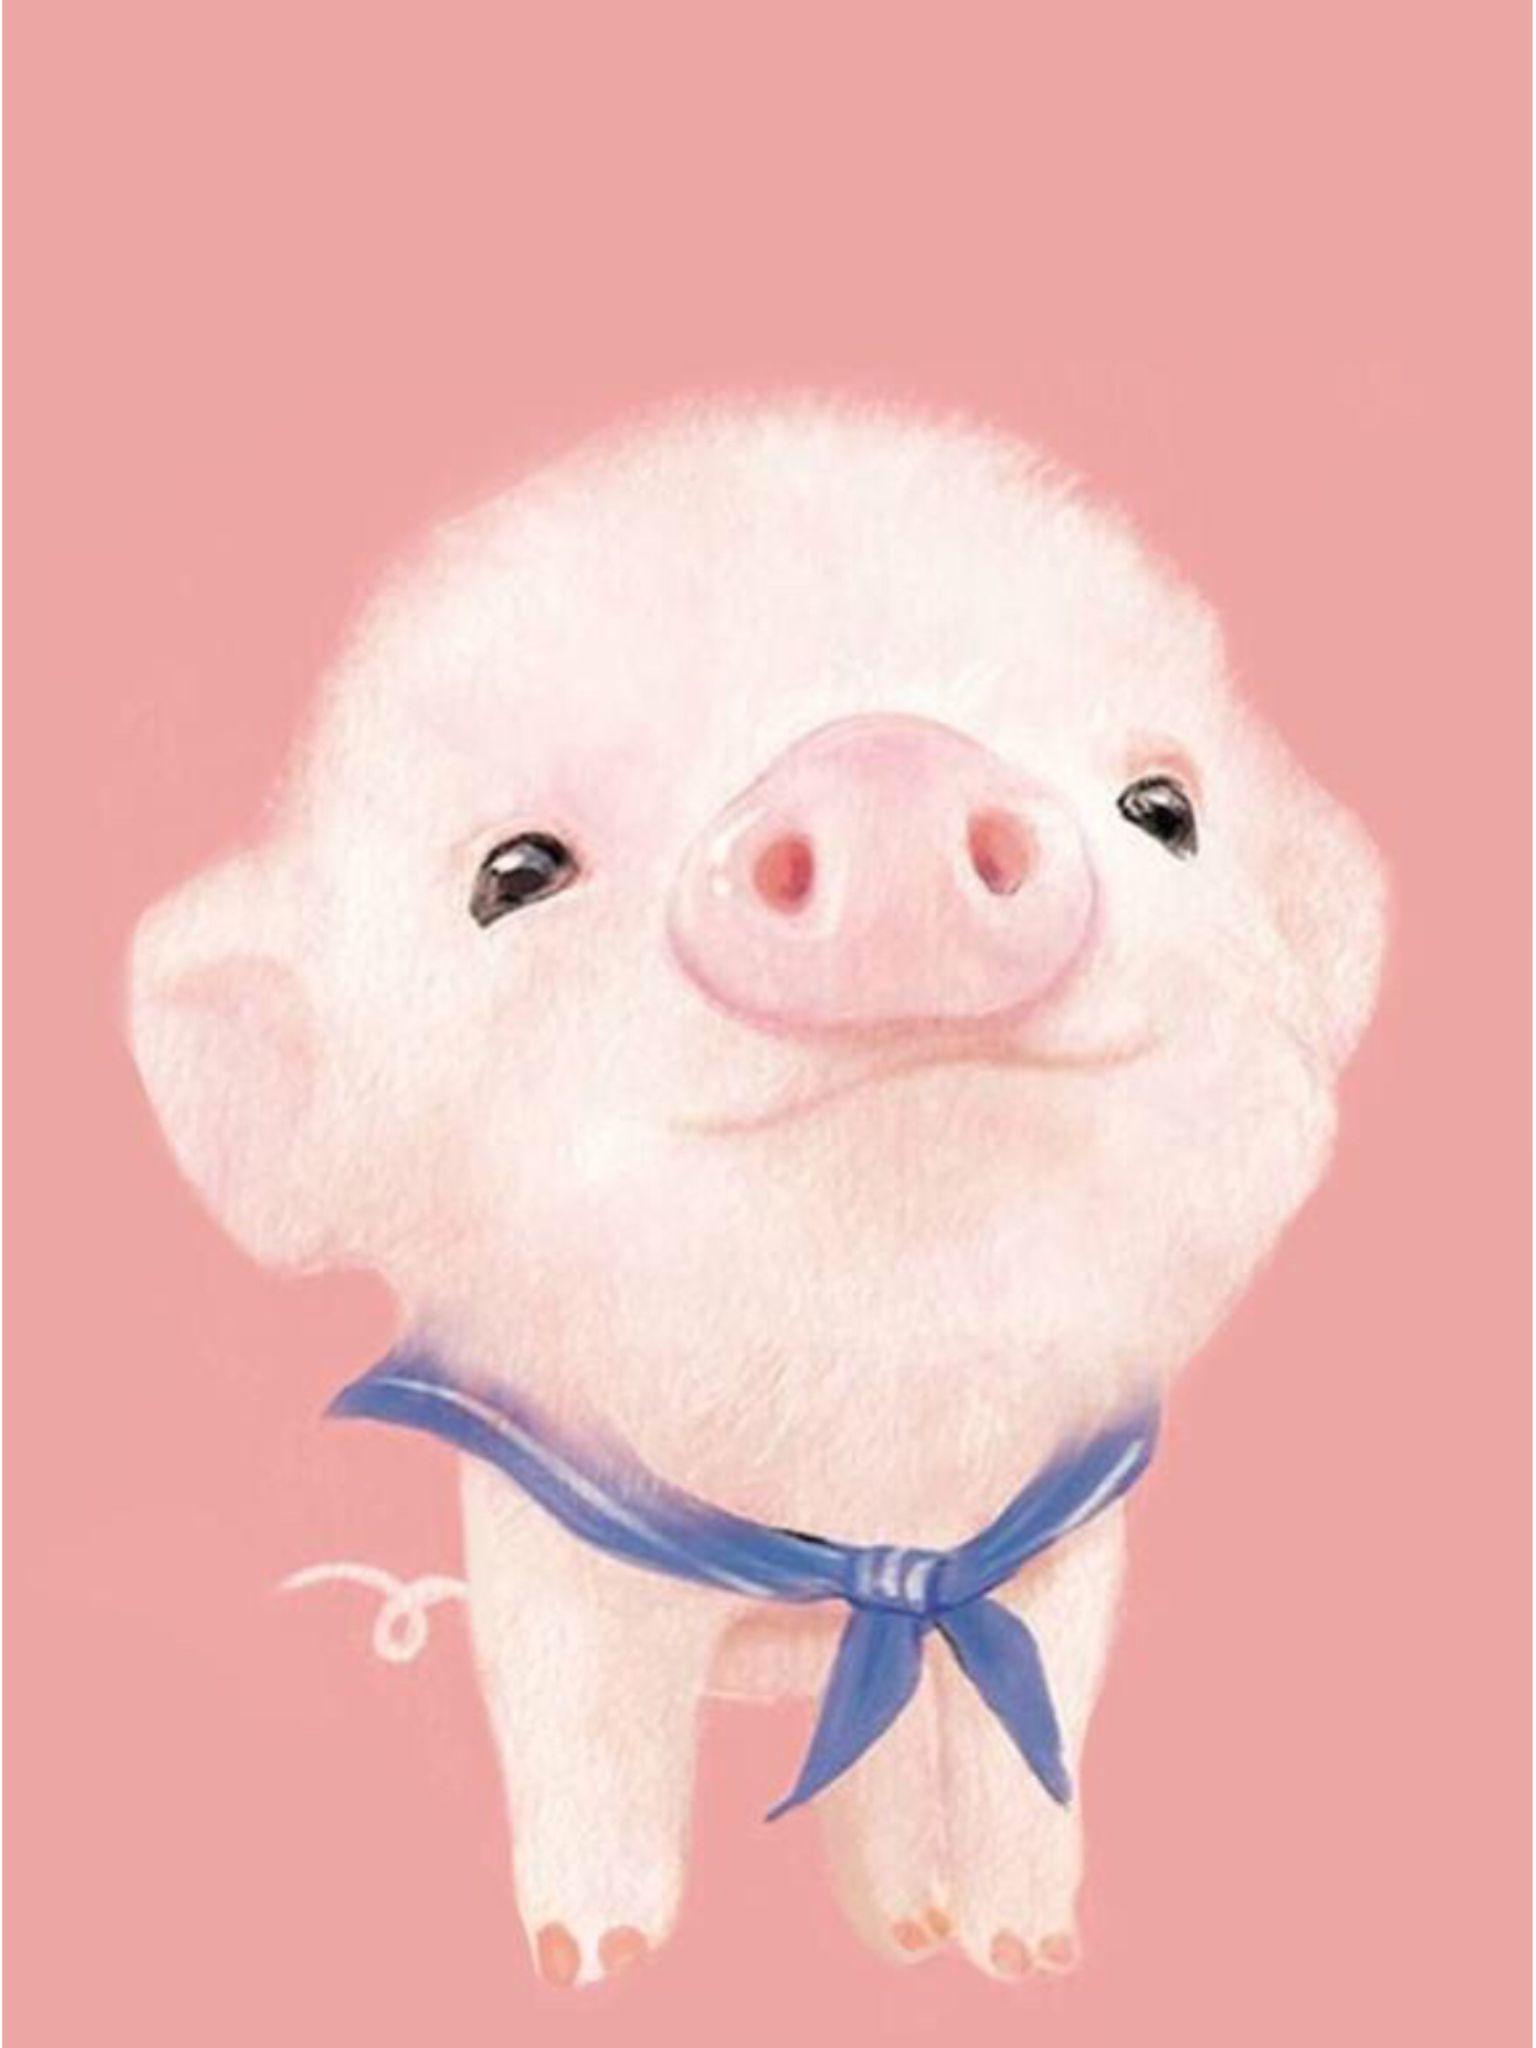 Kawaii Cute Pigs Wallpapers - Top Free